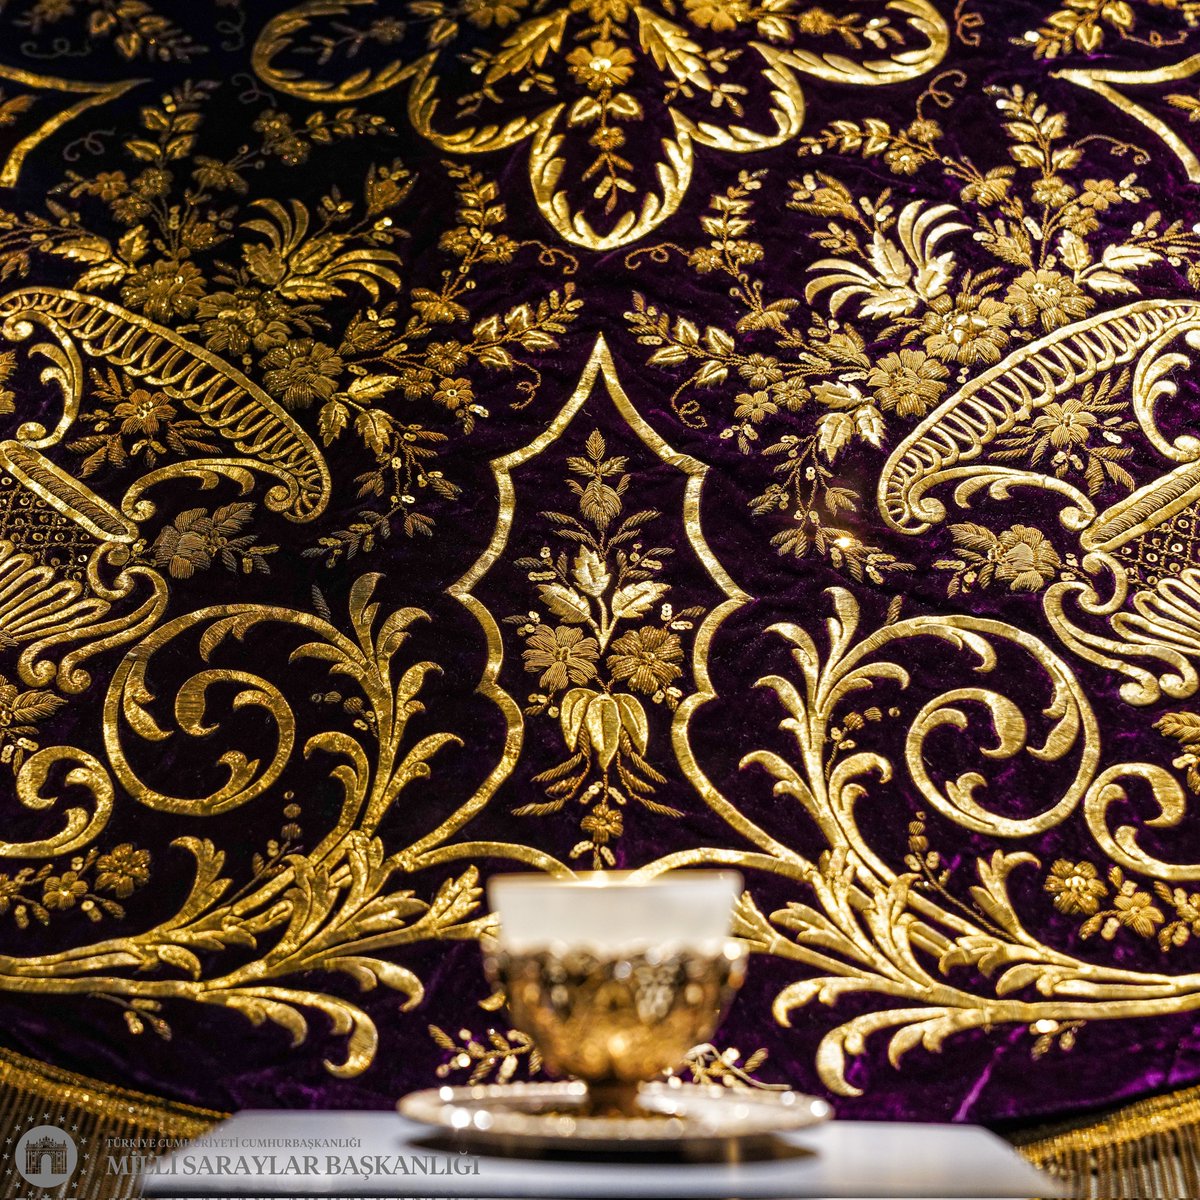 Osmanlı sarayında kahve sunumunda kullanılan sanat harikası örtü… ‘Sitil pûşîdesi’ olarak adlandırılan örtü; ipek kadife kumaş üzerine altın metal iplikle, dival işi ve sarma tekniğiyle işlenmiş. 19. yüzyıla ait örtü, kusursuz işçiliğiyle sarayda kahve kültürünün inceliklerini…